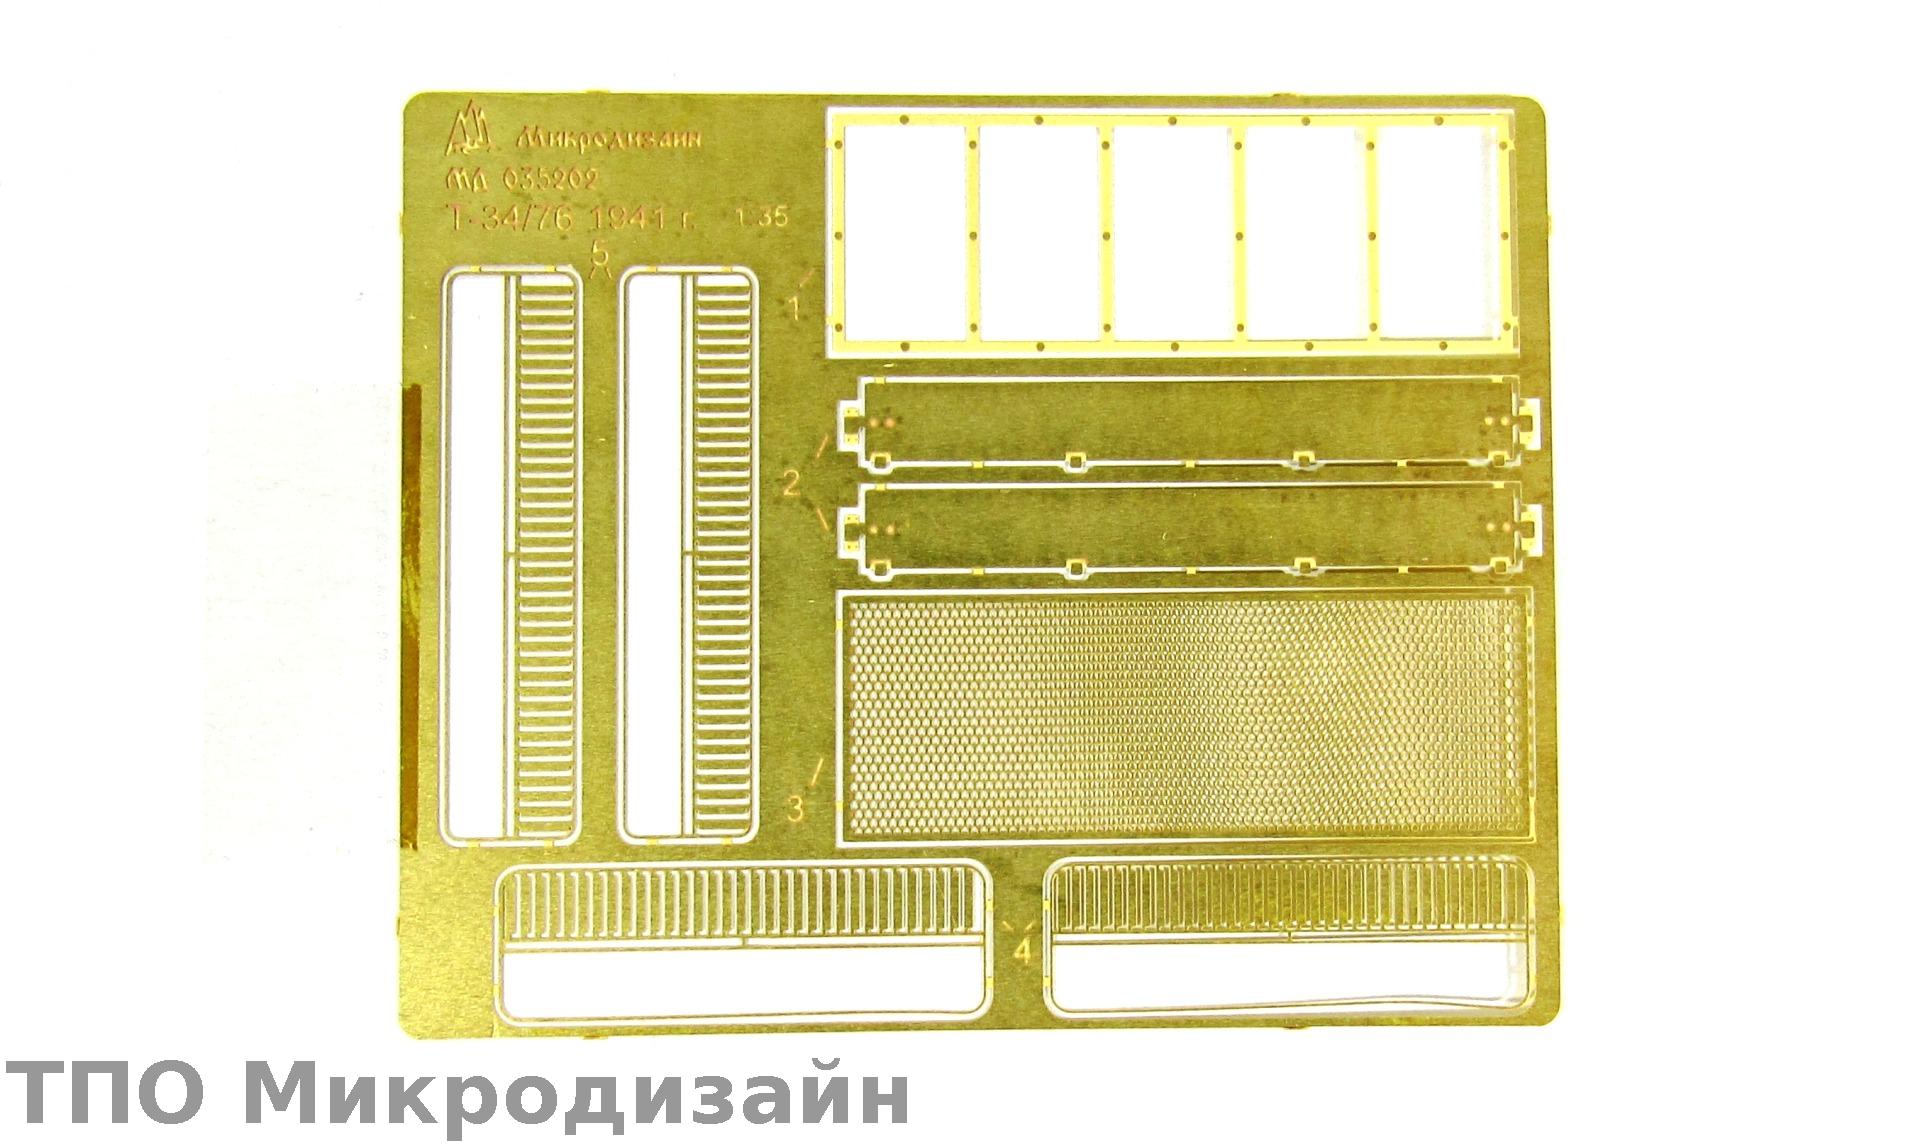 МД 035202  фототравление  Сетки для Танк-34/76 1940-41 гг. (1:35)